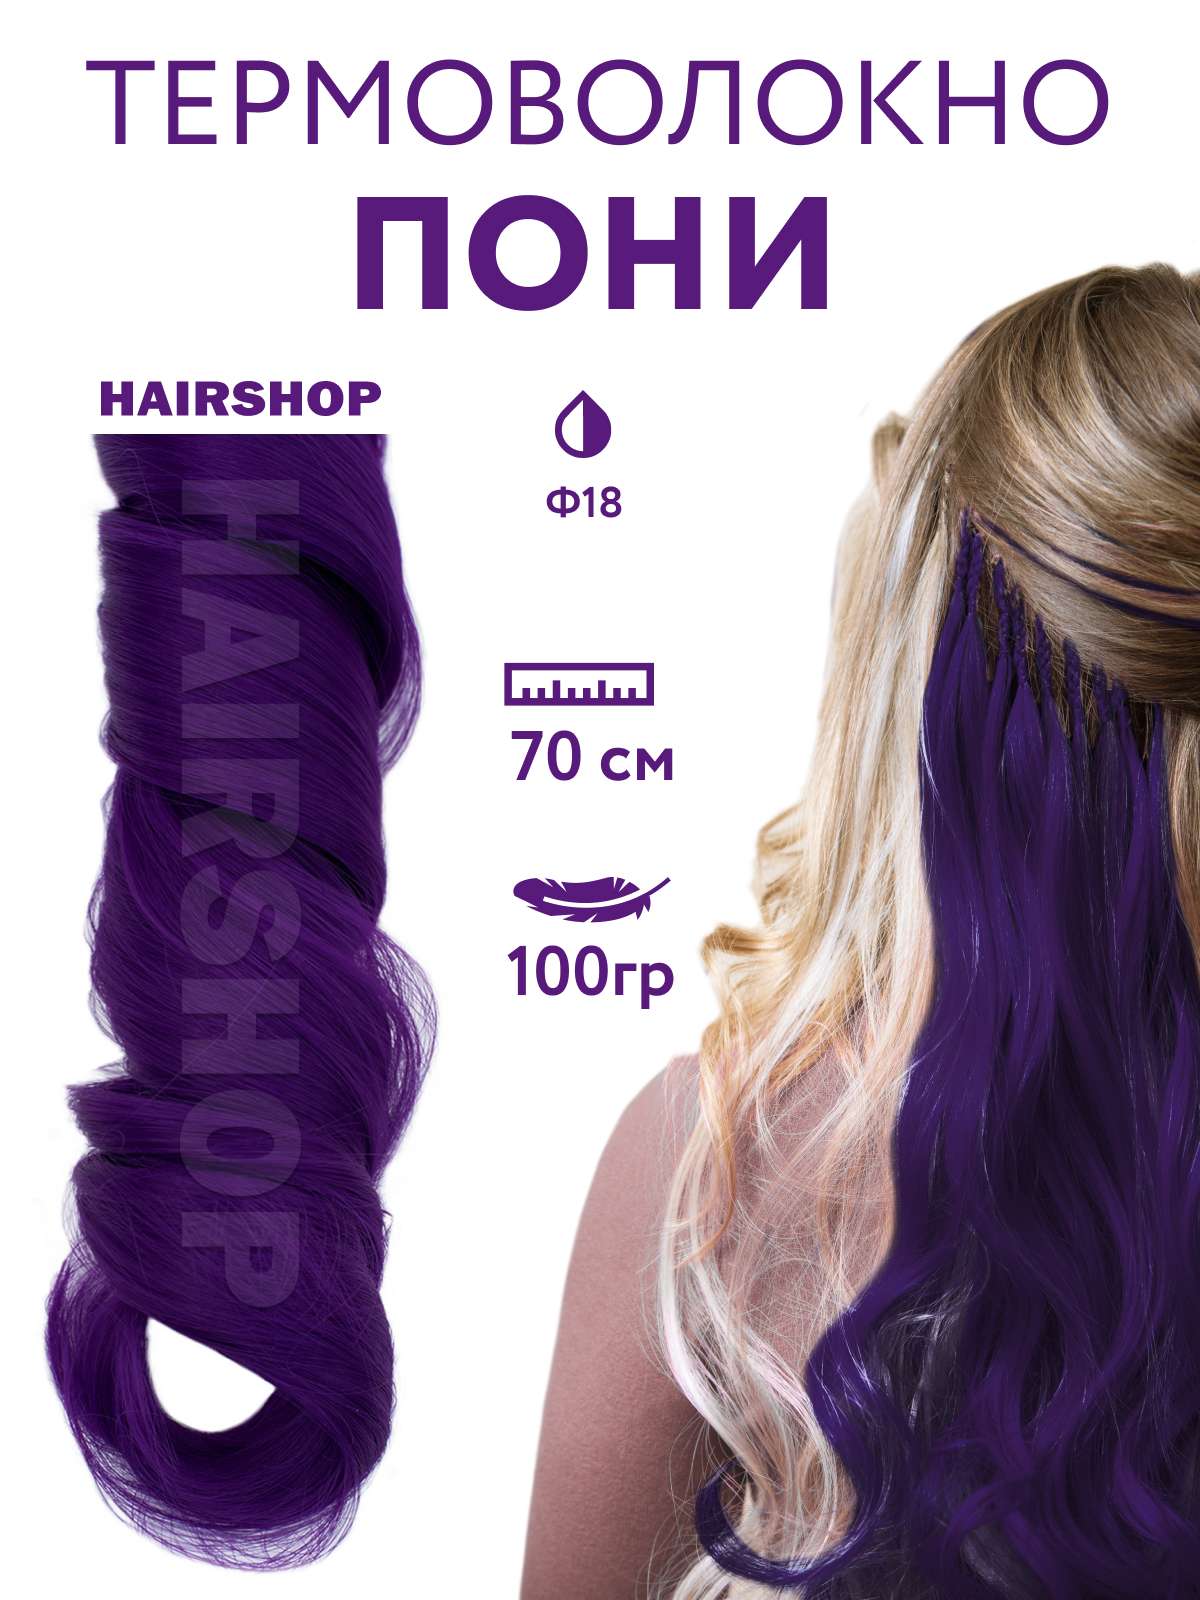 Канекалон HAIRSHOP Пони HairUp для точечного афронаращивания Ф18 Темно-фиолетовый 1,4м канекалон hairshop пони hairup для точечного афронаращивания о1 персик пастельный 1 4м